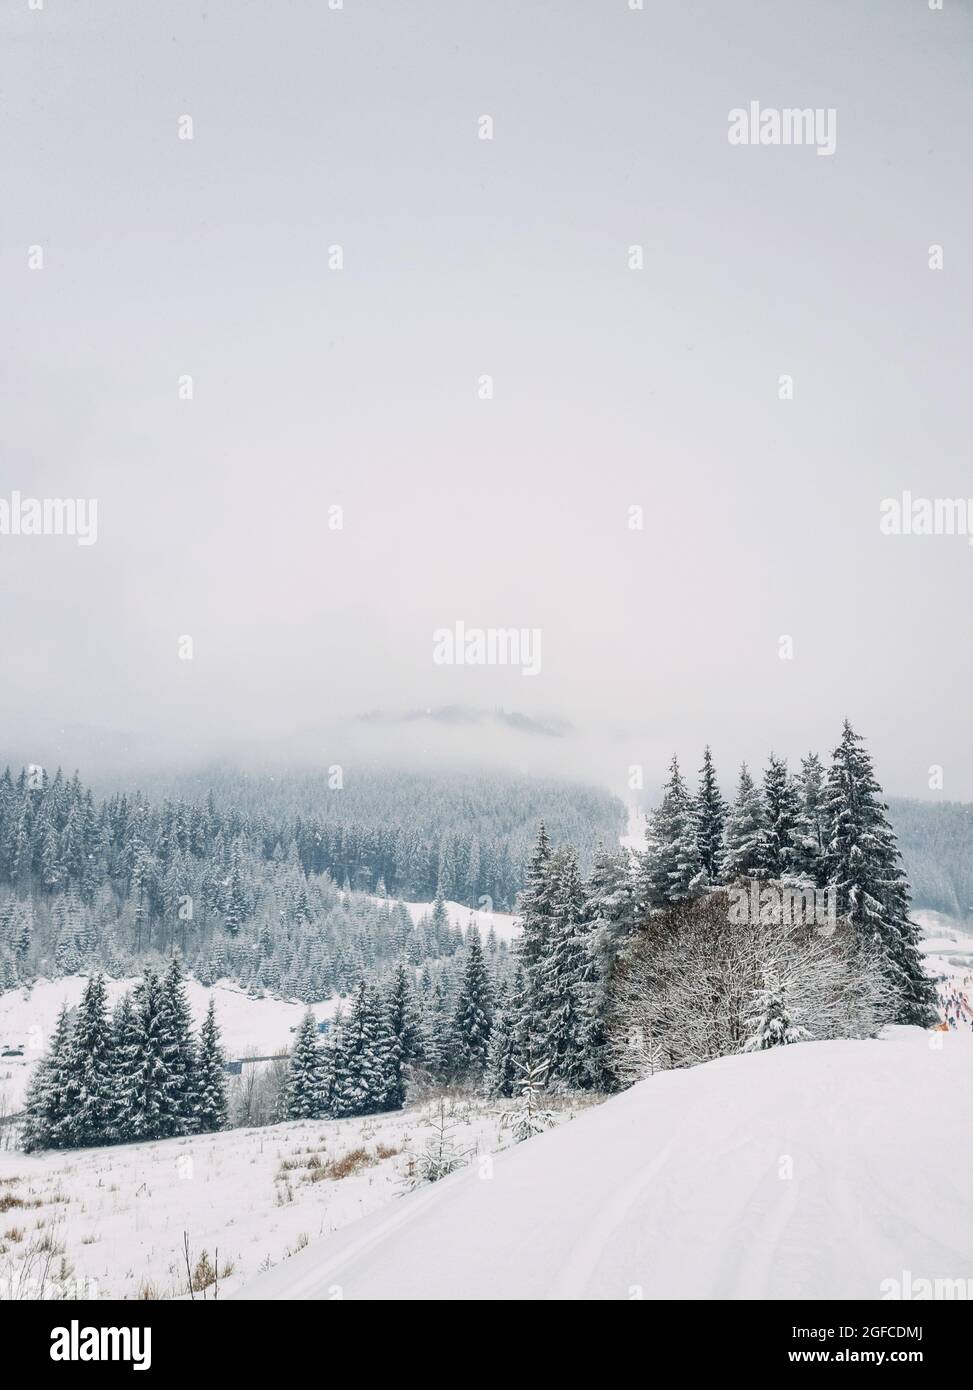 Wunderschöne Winterschneeszene im Skigebiet Bukovel in den ukrainischen Karpaten. Schneeflocken fallen vom Himmel. Schneebedeckter Tannenwald auf dem nebligen Gipfel Stockfoto